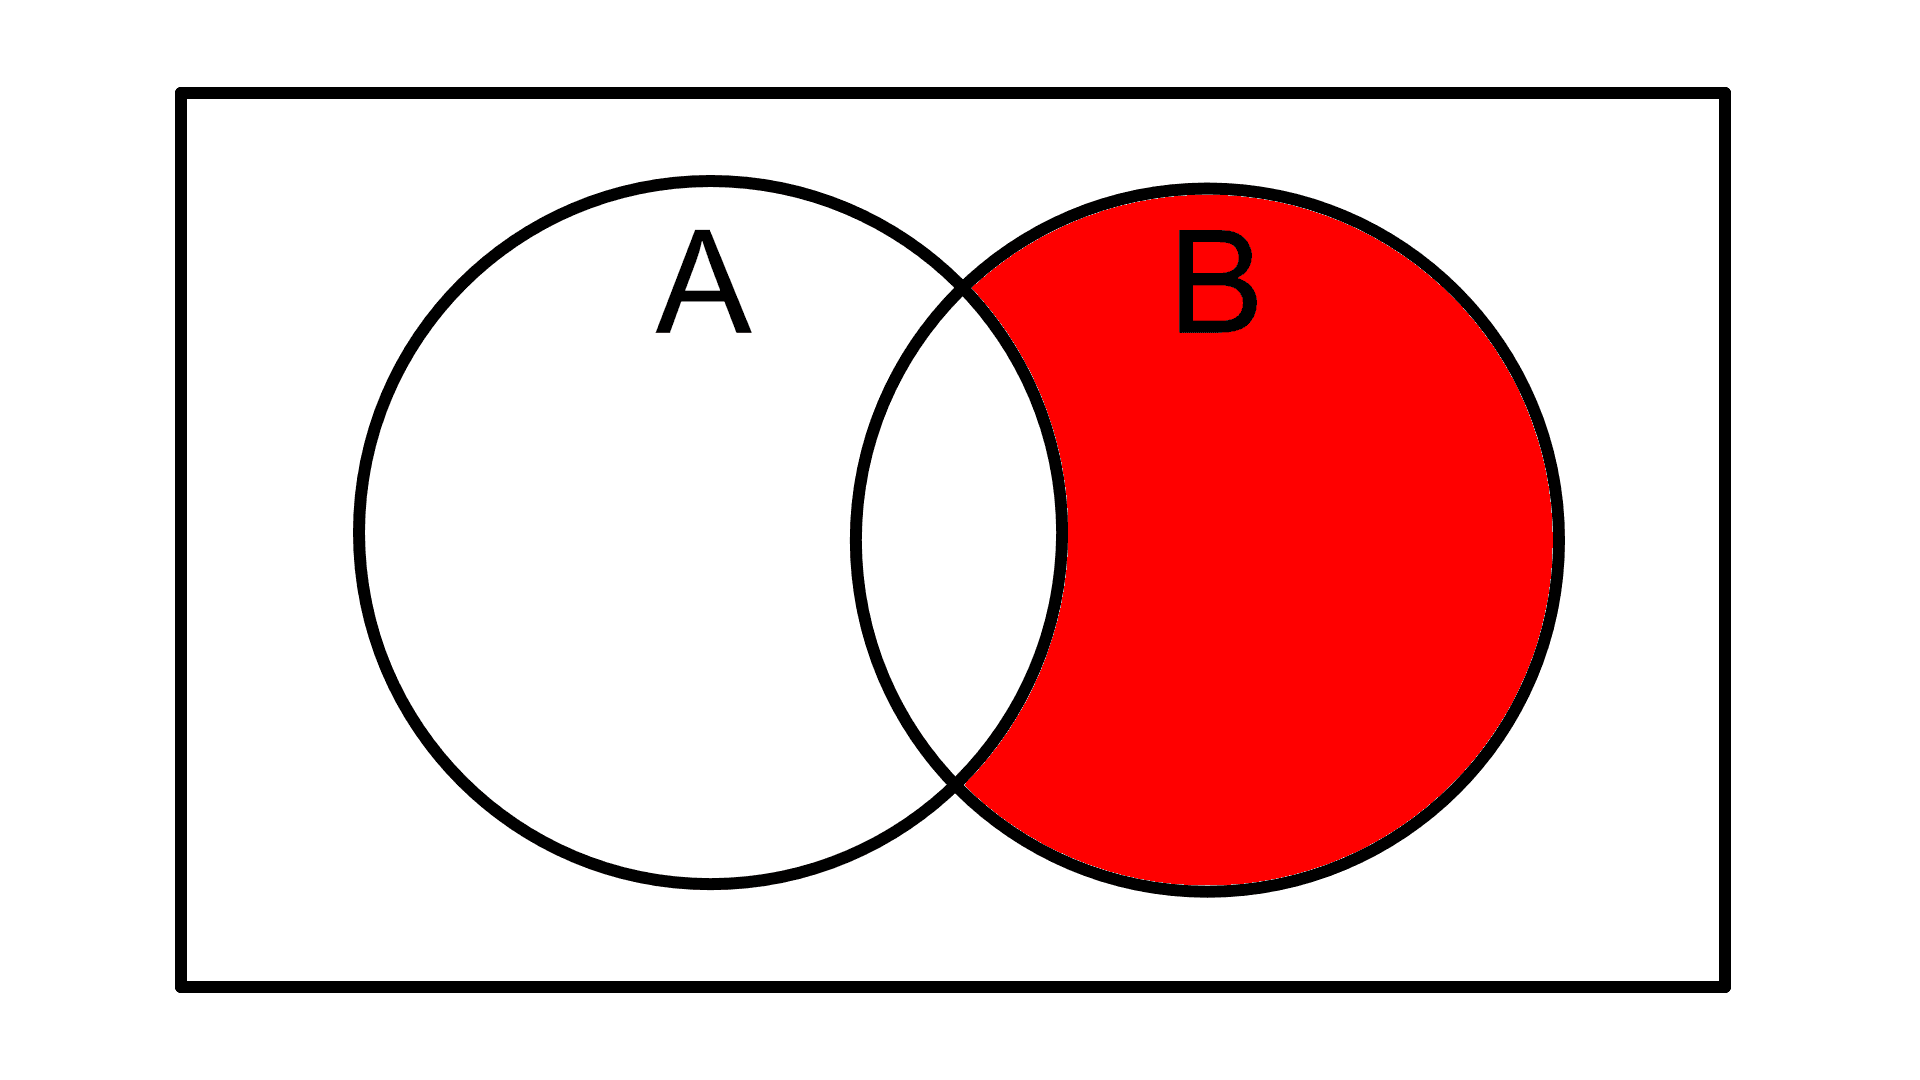 2 elipsy w prostokącie z zamalowaną częścią elipsy B, która nie przecina elipsy A.